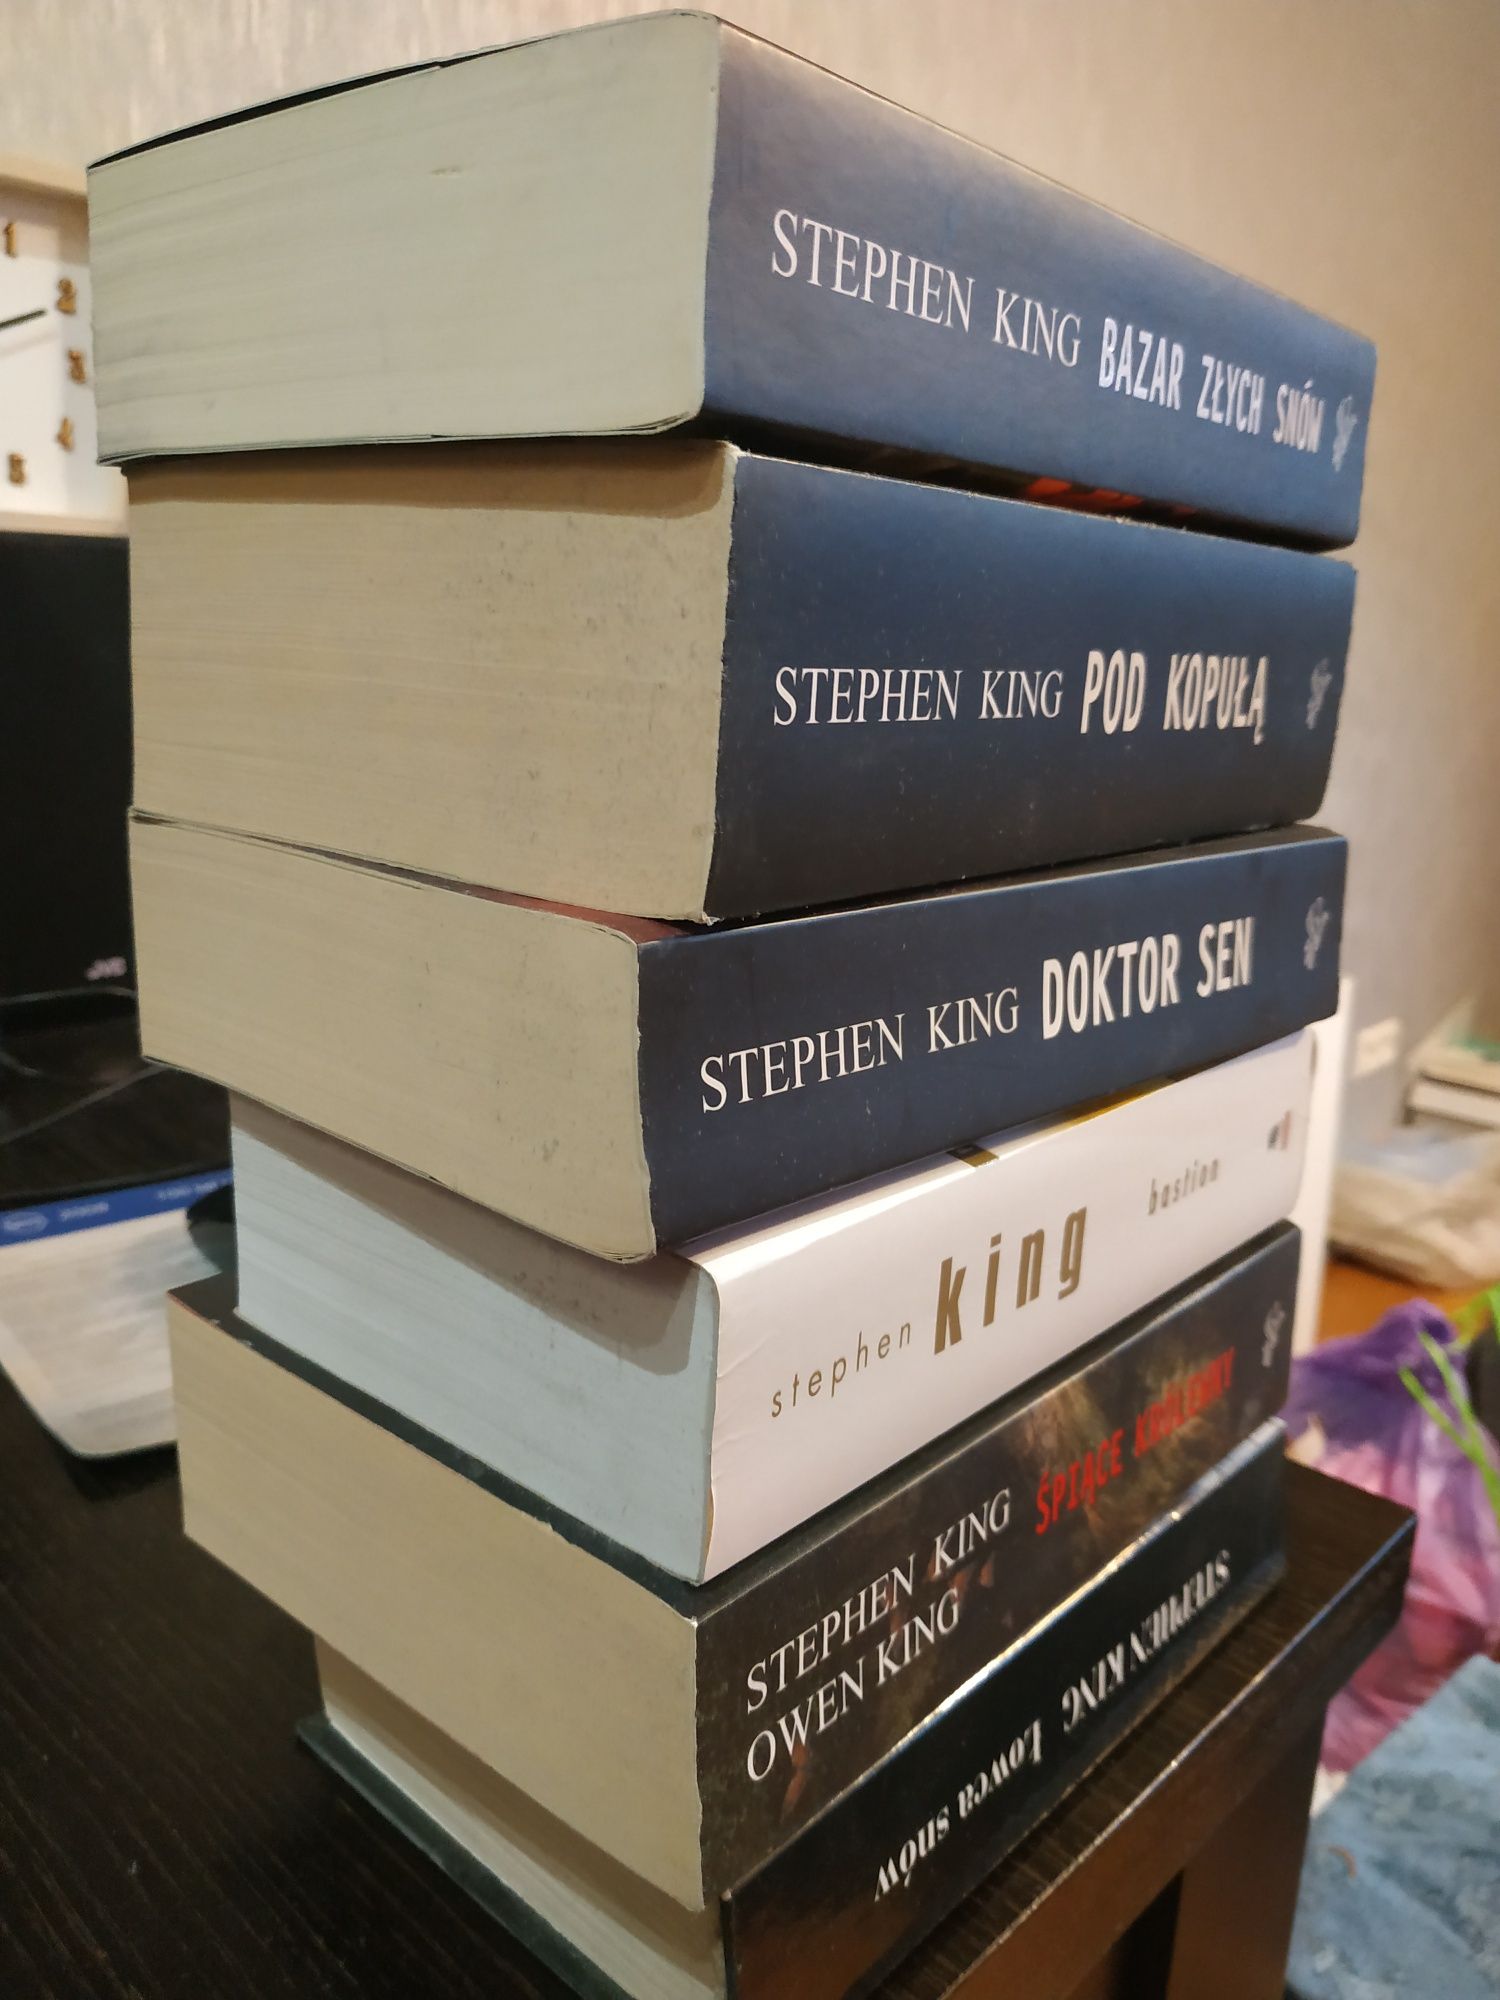 Stephen King 4* łowca snów, śpiące królewny..